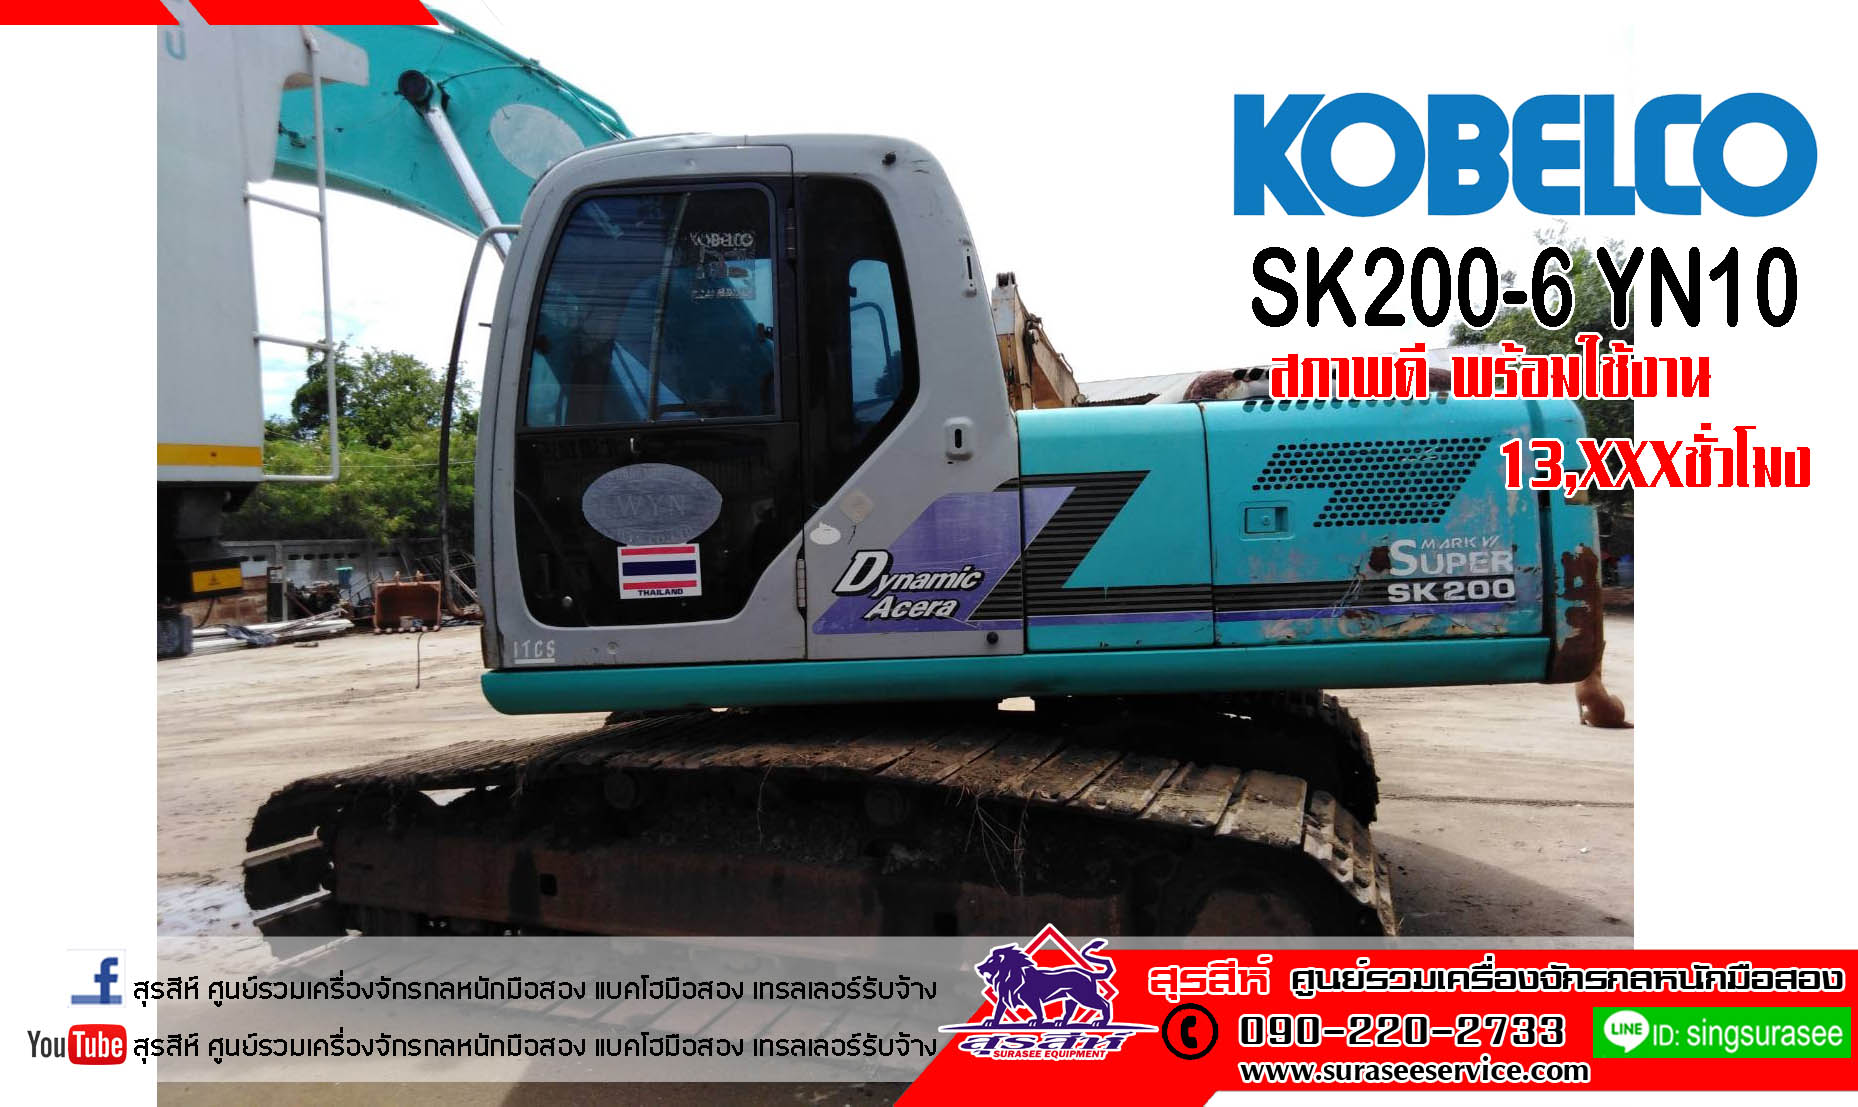 ขายรถขุดมือสอง KOBELCO SK200-6 YN10 ใช้งาน 13,xxx ชั่วโมง สภาพดี พร้อมใช้งาน